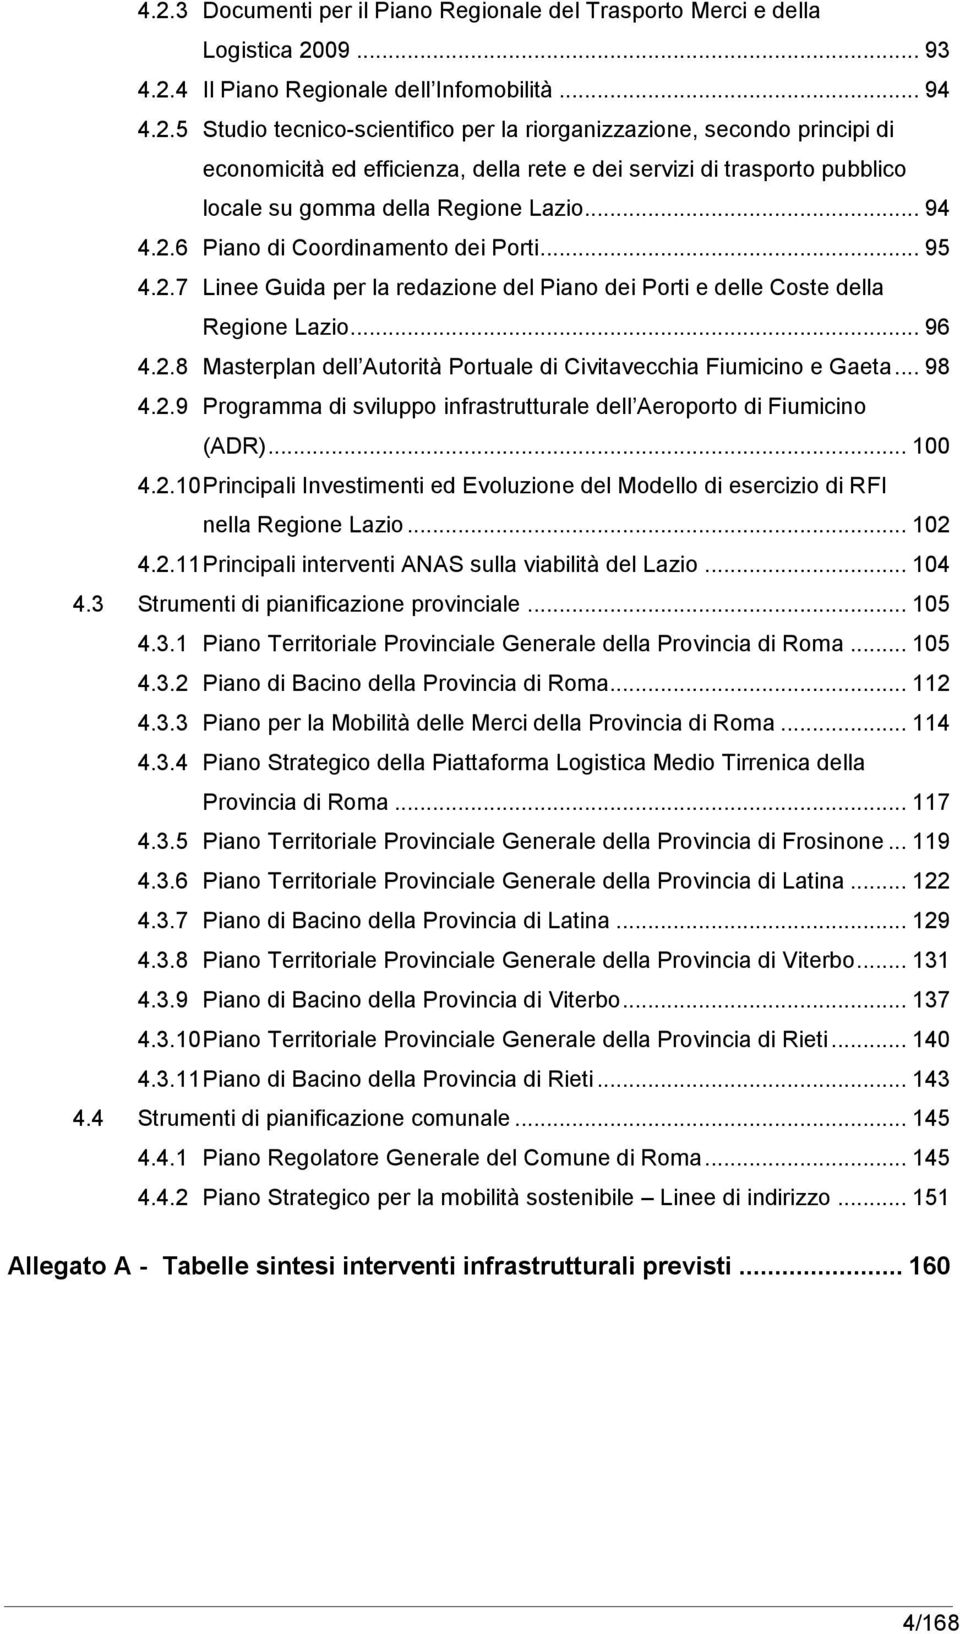 .. 98 4.2.9 Programma di sviluppo infrastrutturale dell Aeroporto di Fiumicino (ADR)... 100 4.2.10 Principali Investimenti ed Evoluzione del Modello di esercizio di RFI nella Regione Lazio... 102 4.2.11 Principali interventi ANAS sulla viabilità del Lazio.